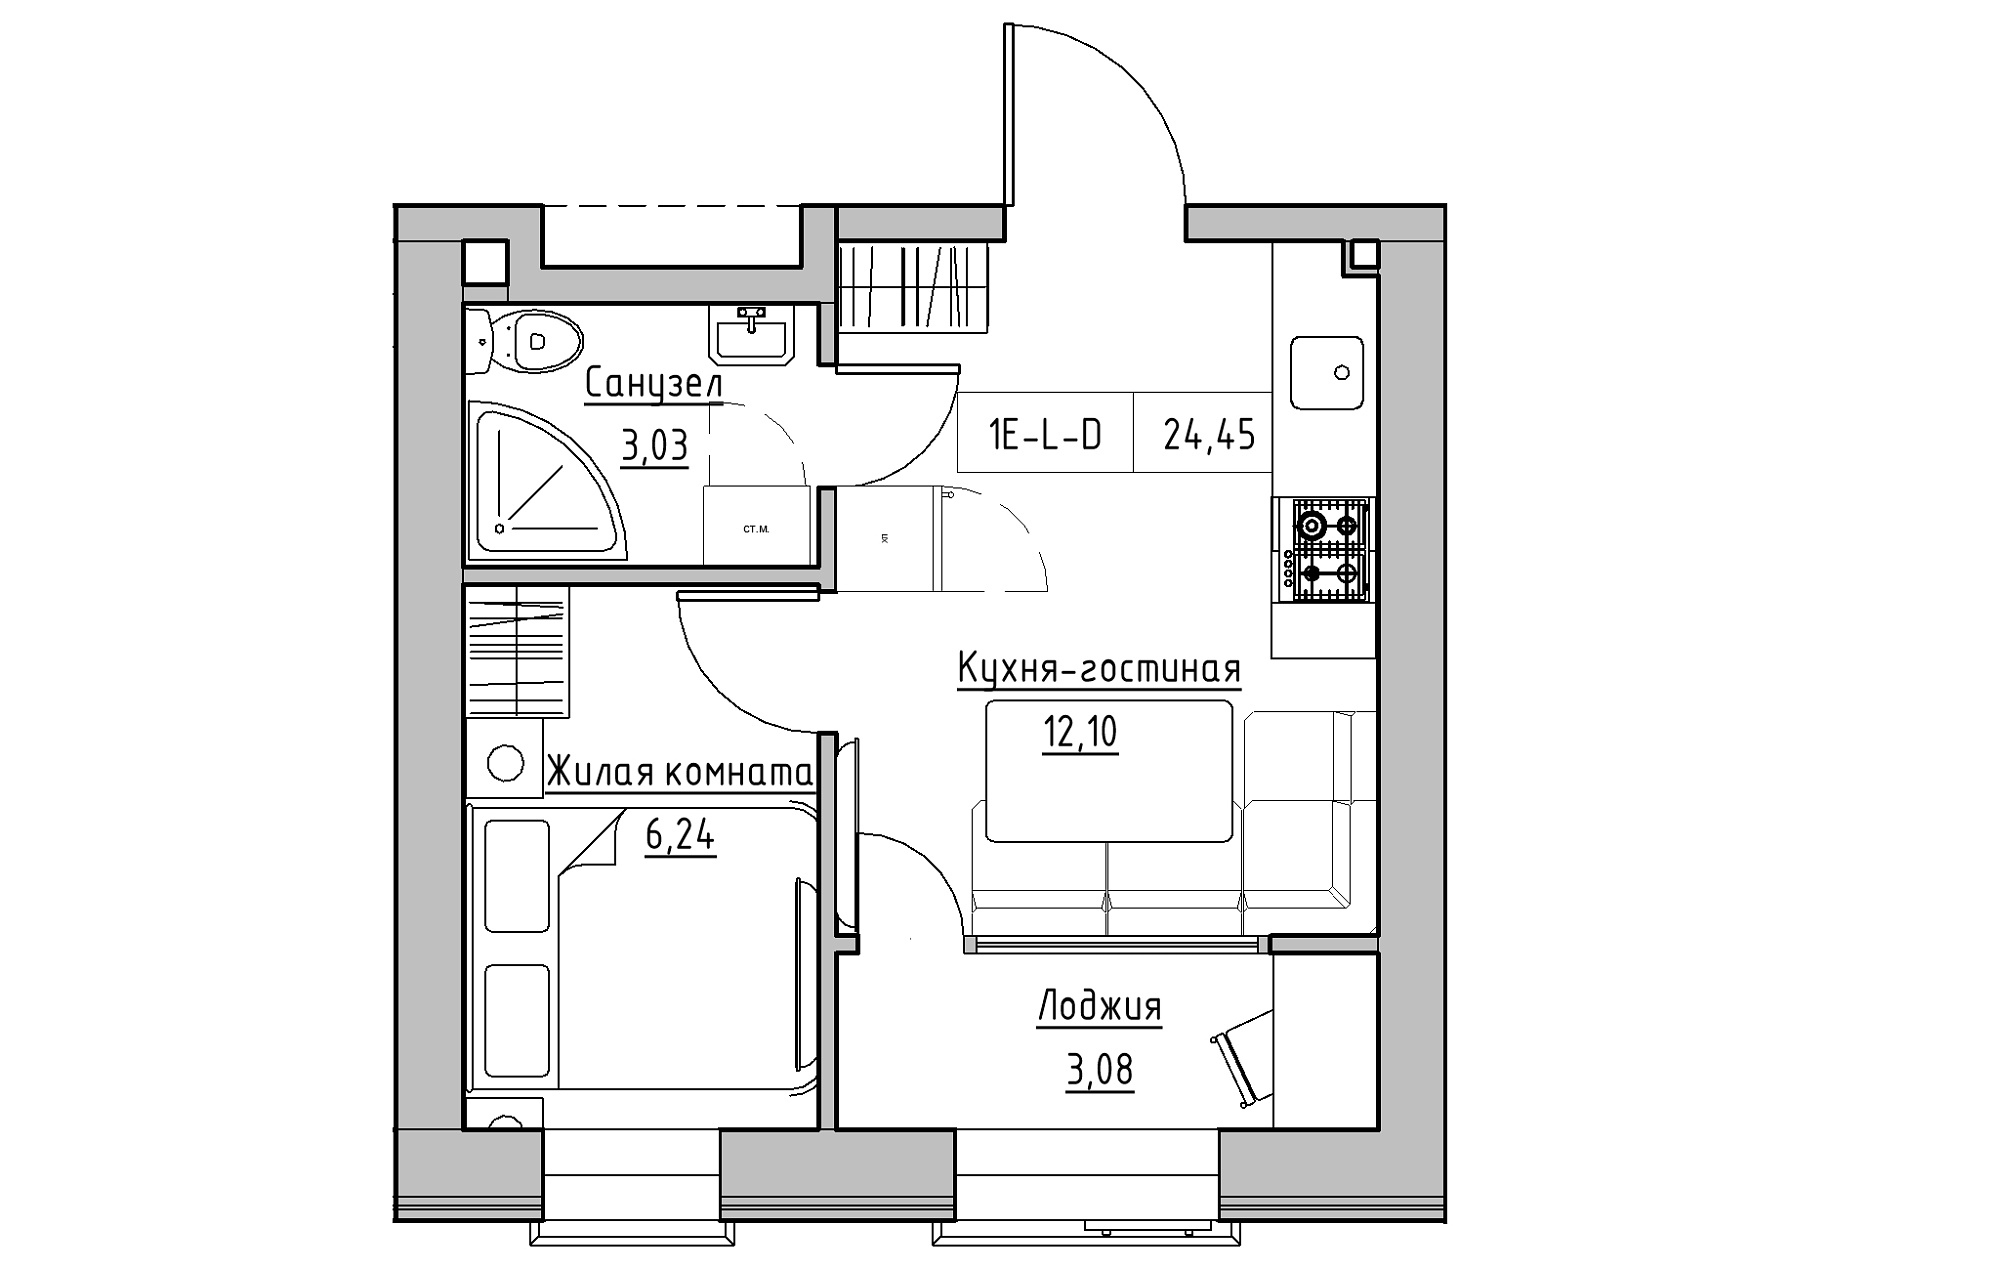 Планування 1-к квартира площею 24.45м2, KS-018-05/0002.